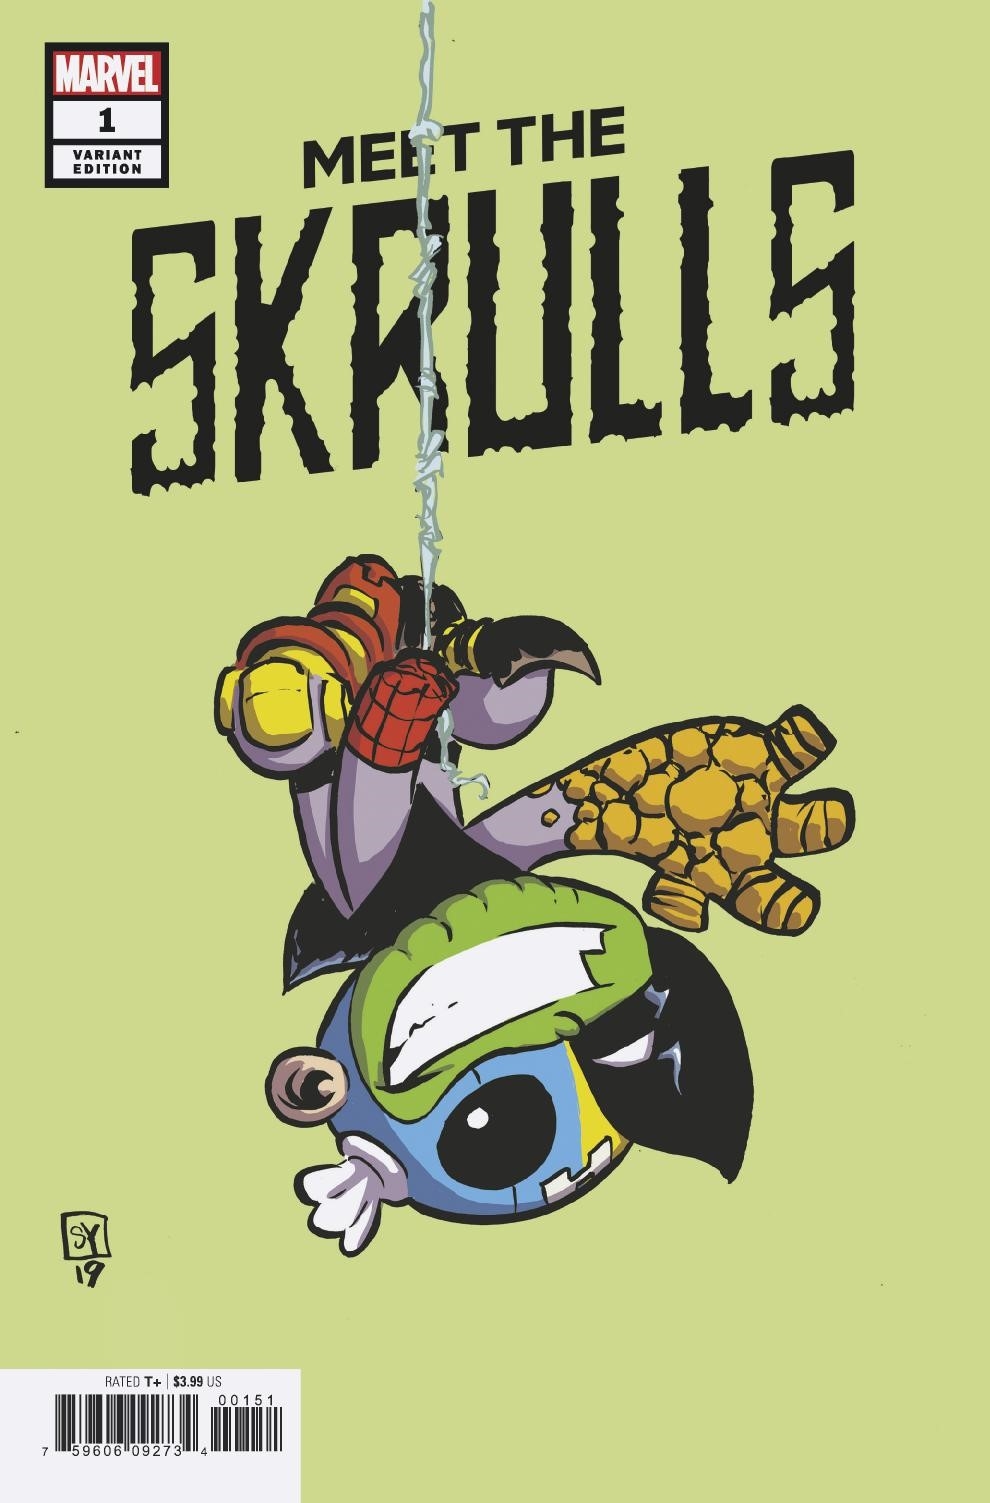 Details about   Meet the Skrulls #2 Marvel Comics 1st Print EXCELSIOR BIN 